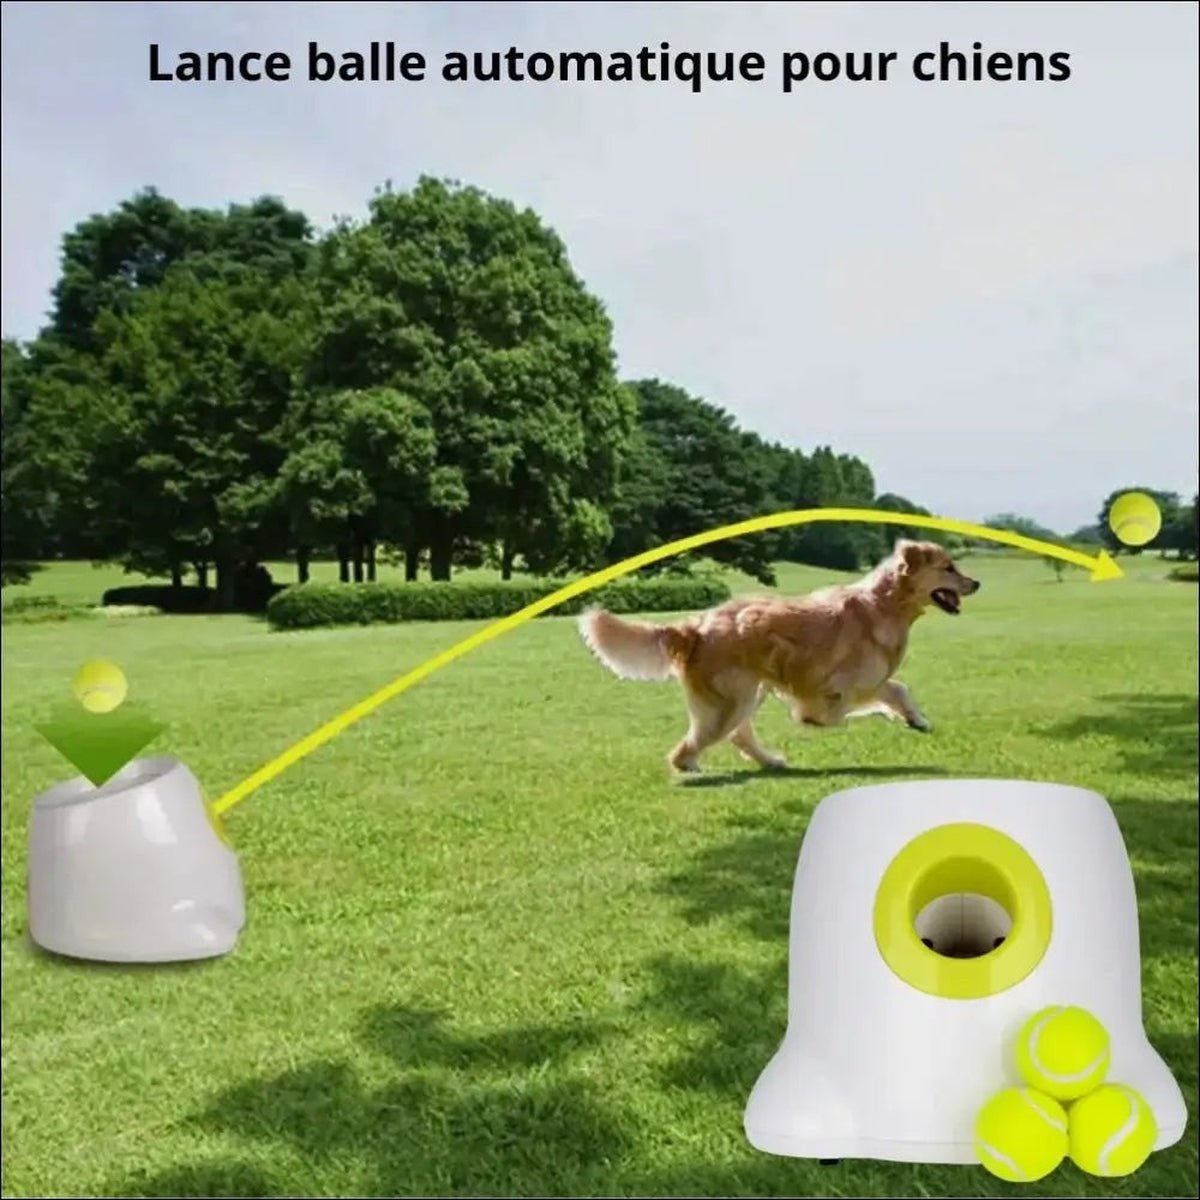 Lanceur De Balles Ballpitcher Pour Chiens - CJJJCWGY00346 - EU plug - Lances balles automatiques - Chienalafolie